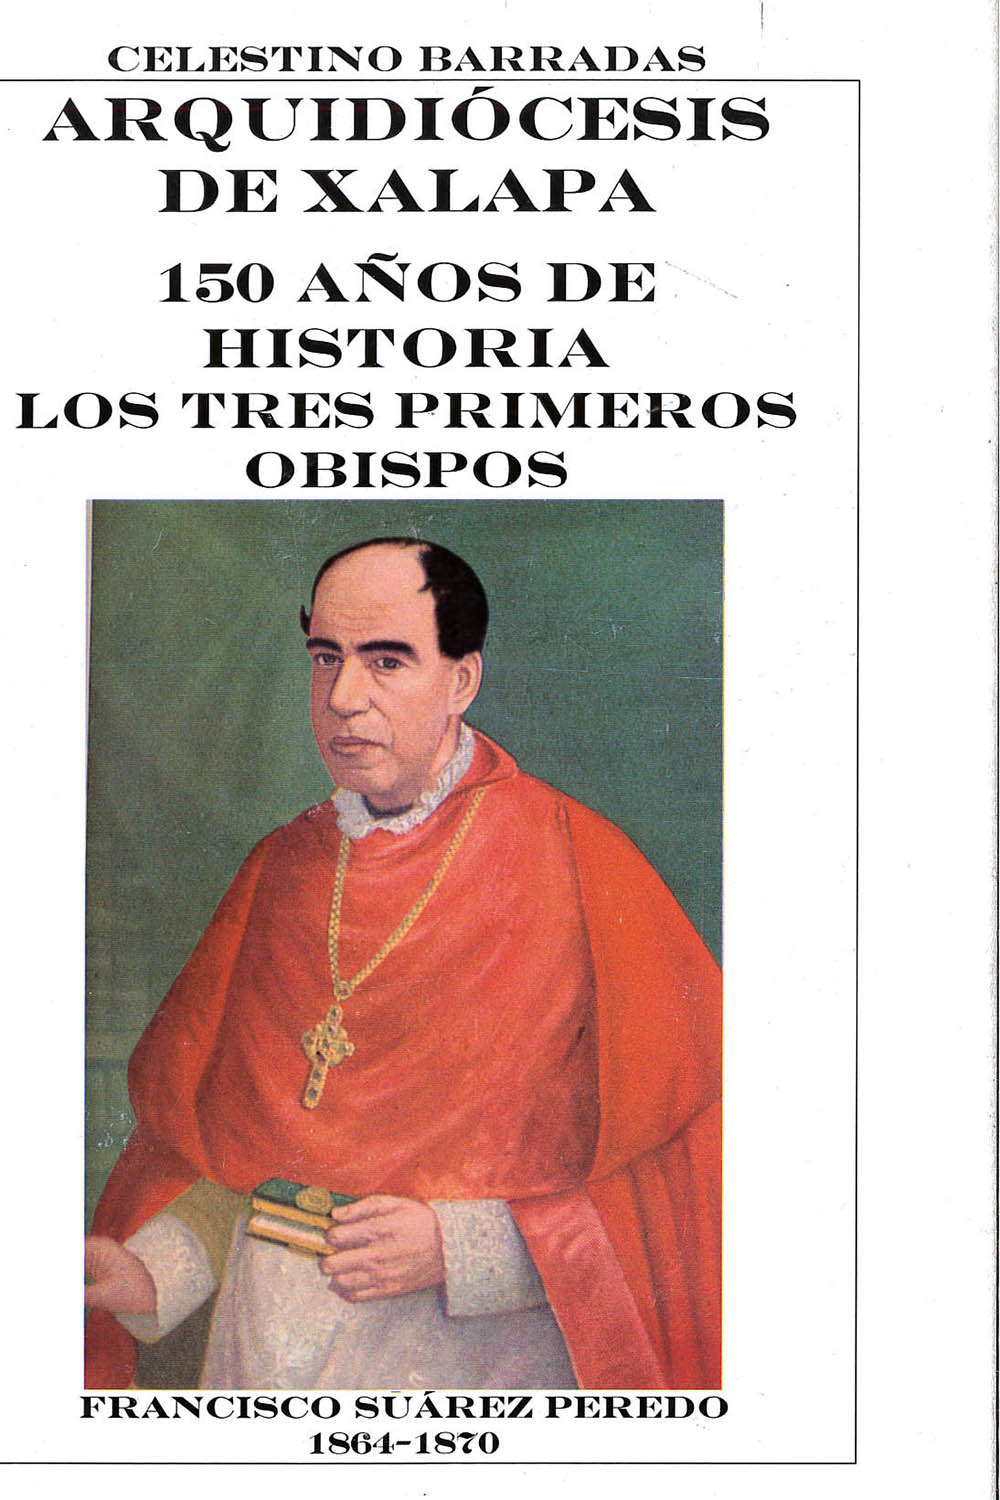 1 / 16 - BX1431,X35 B37 Arquidiócesis de Xalapa 150 años de historia Los primeros tres obispos
Celestino Barradas - Ediciones San José, México 2012